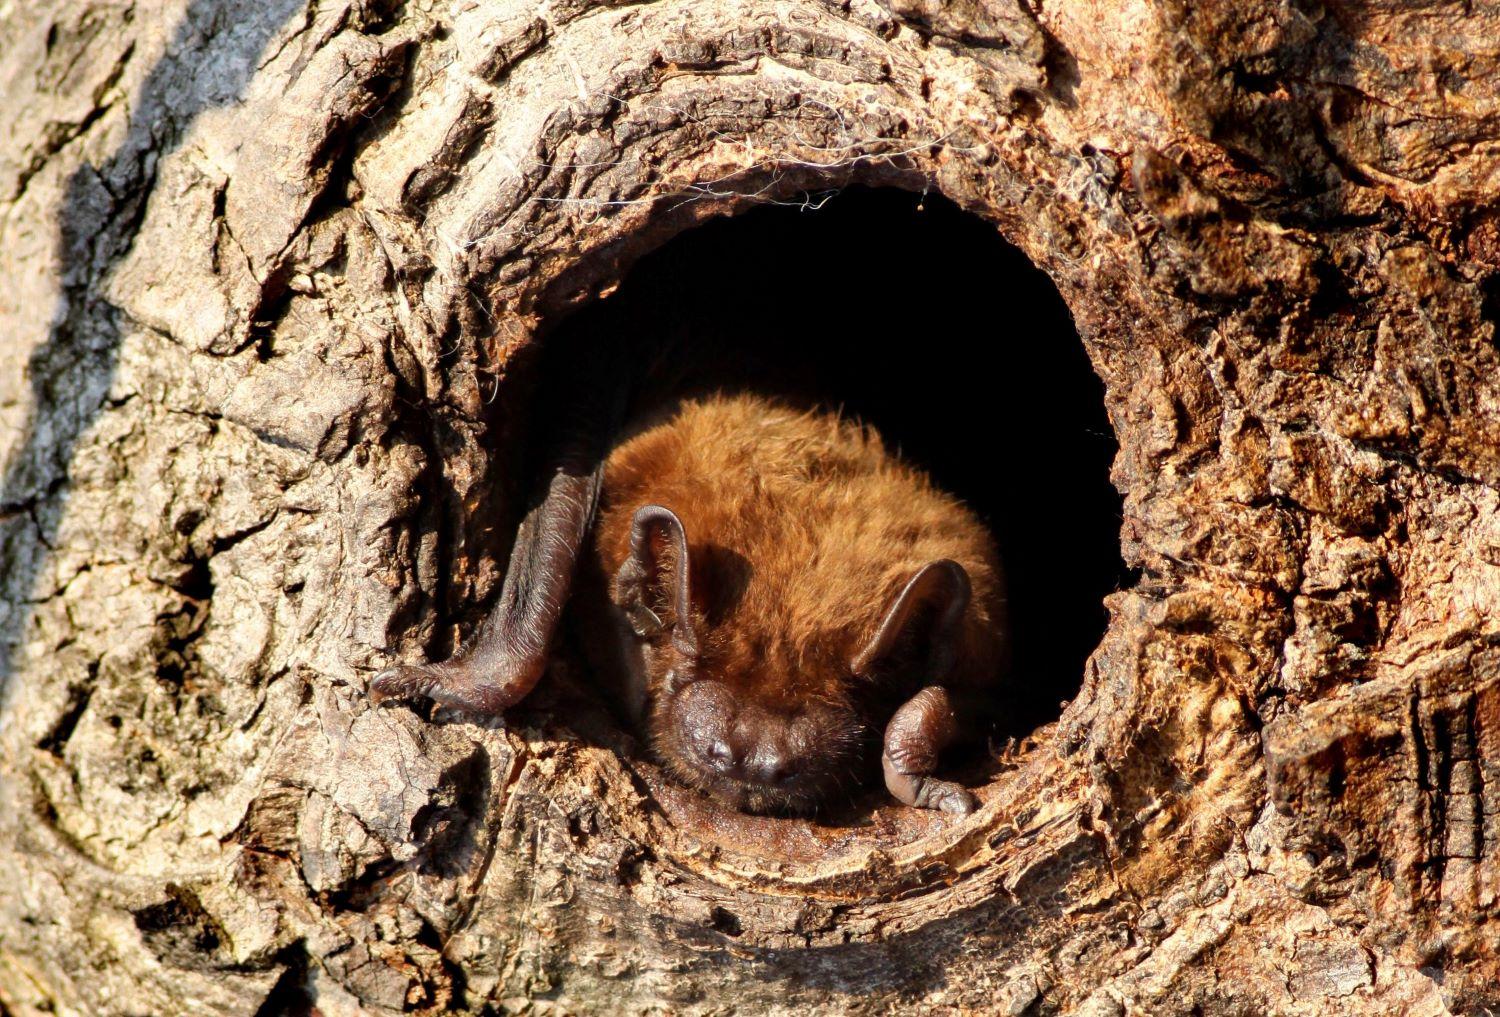 A bat resting in a tree trunk